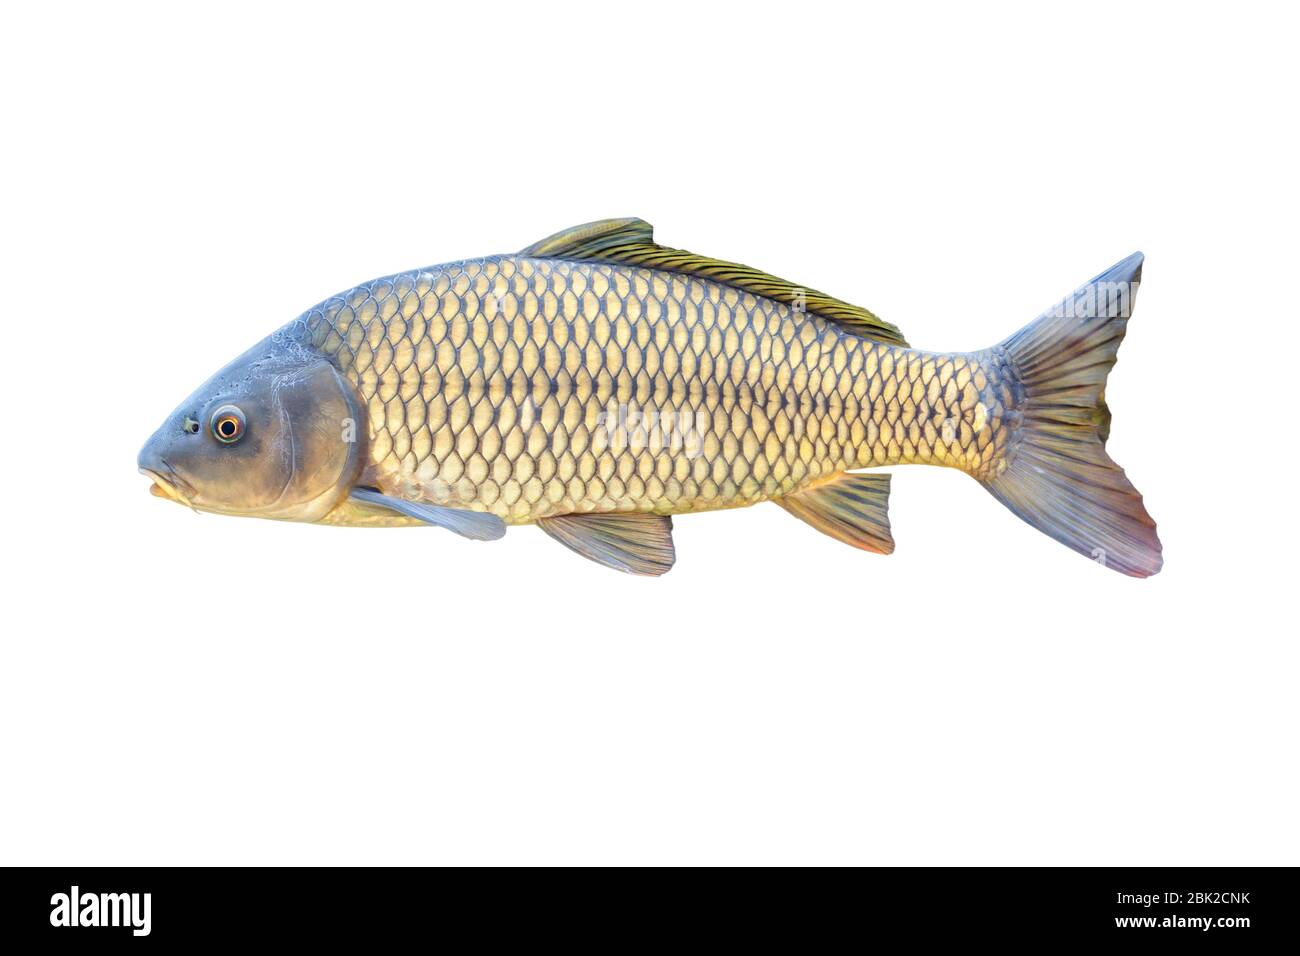 Europäischer Karpfen oder Cyprinus carpio, eine Art von Süßwasserfischen. Isoliert über Weiß Stockfoto